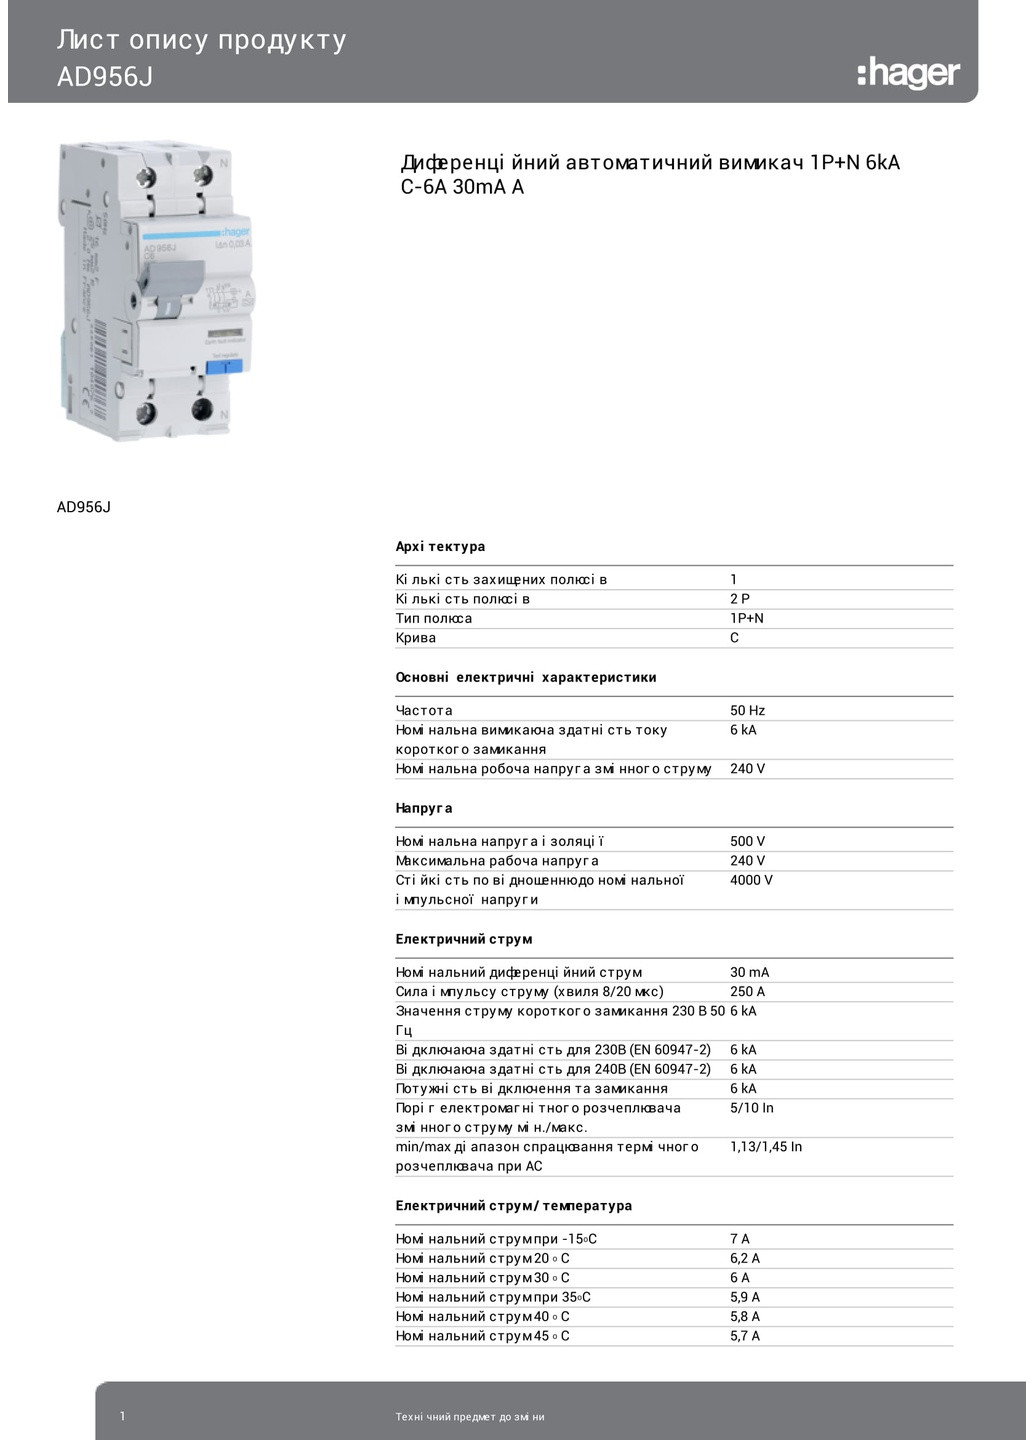 Дифференциальный автоматический выключатель AD956J 1P+N 6kA C-6A 30mA тип A дифавтомат (3308) Hager (295033892)